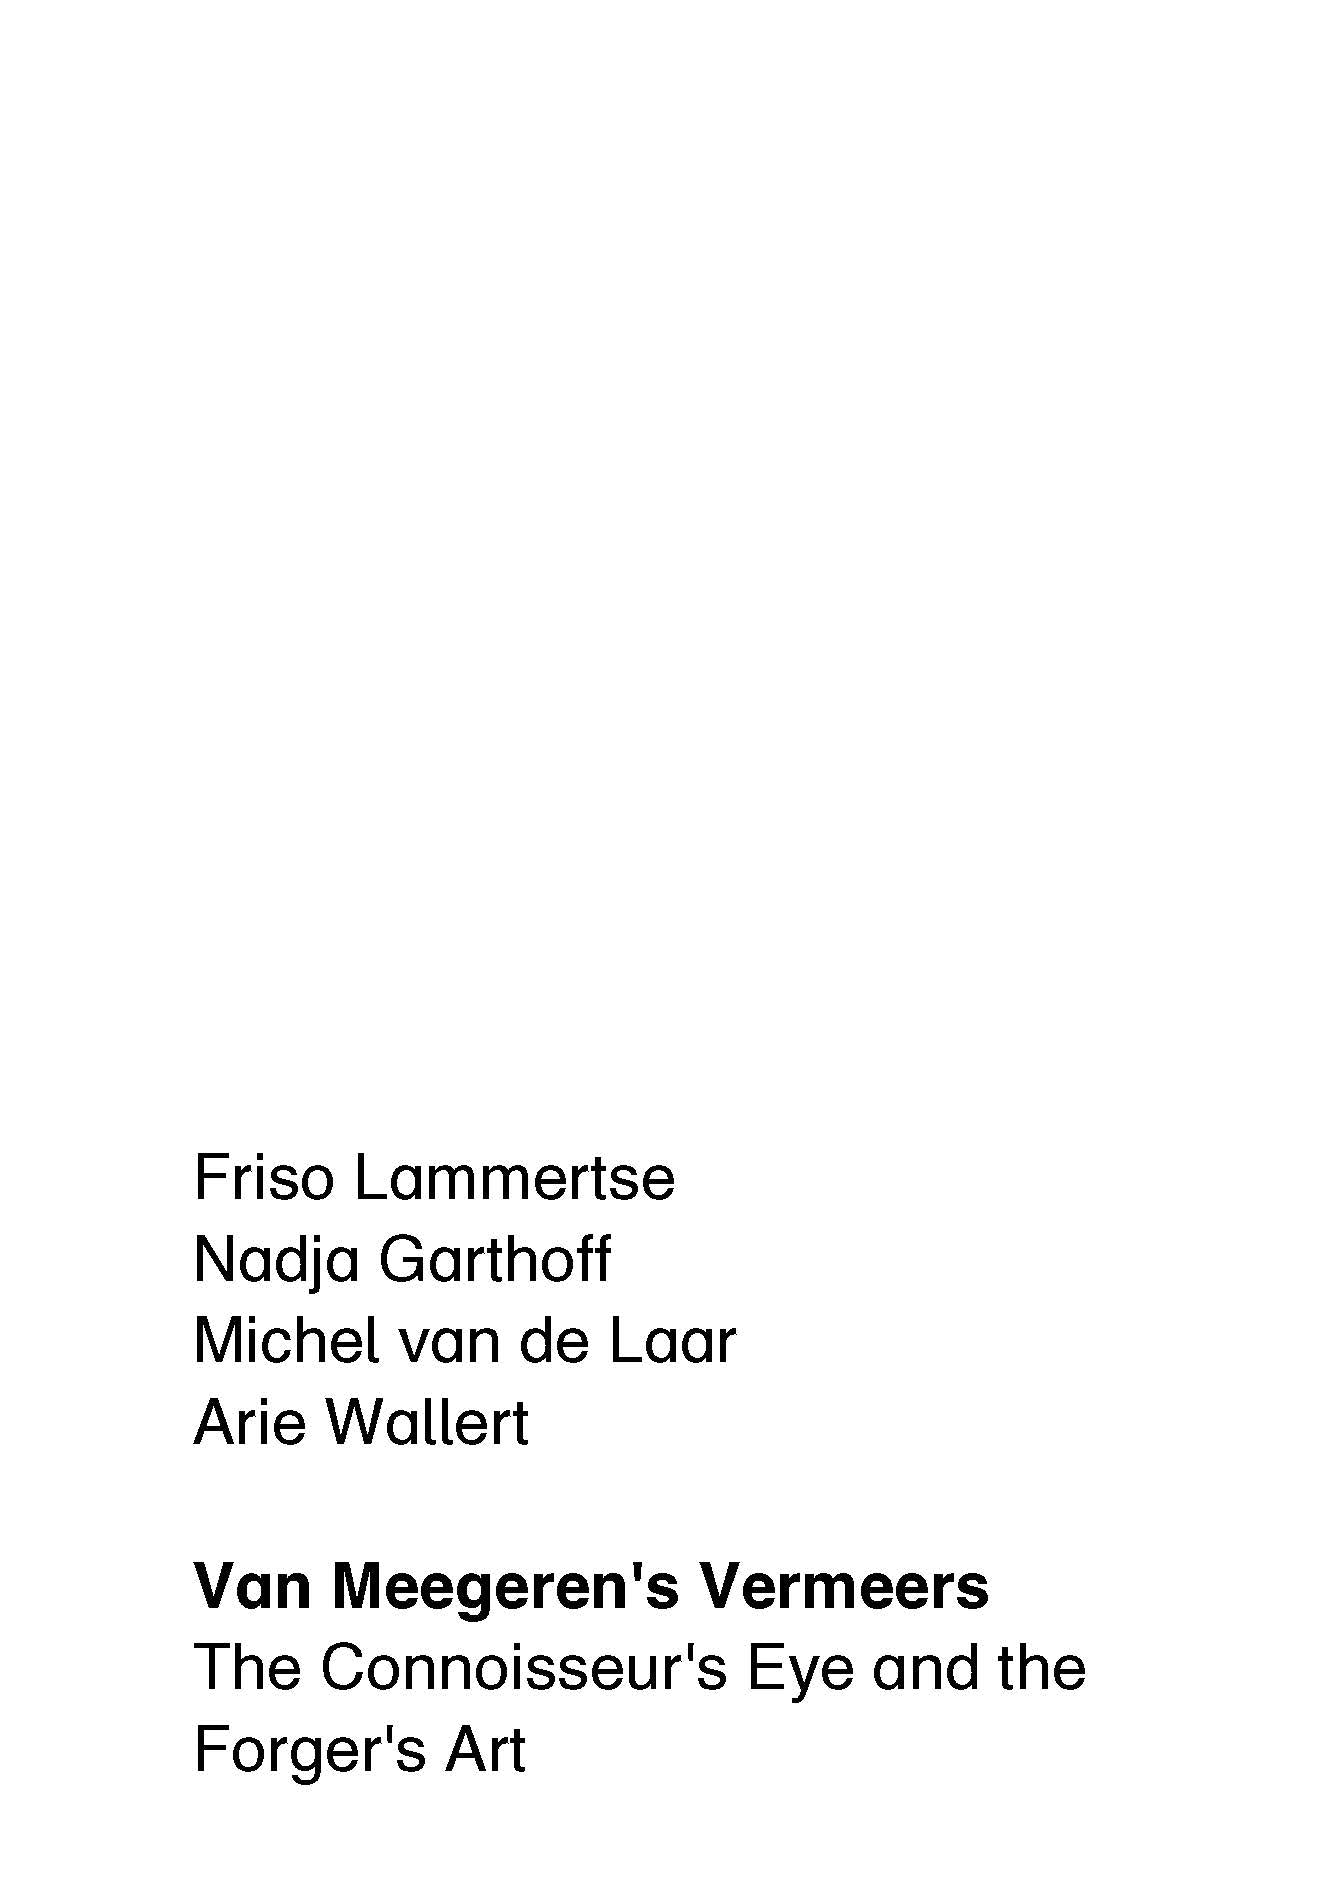 Van Meegeren's Vermeers